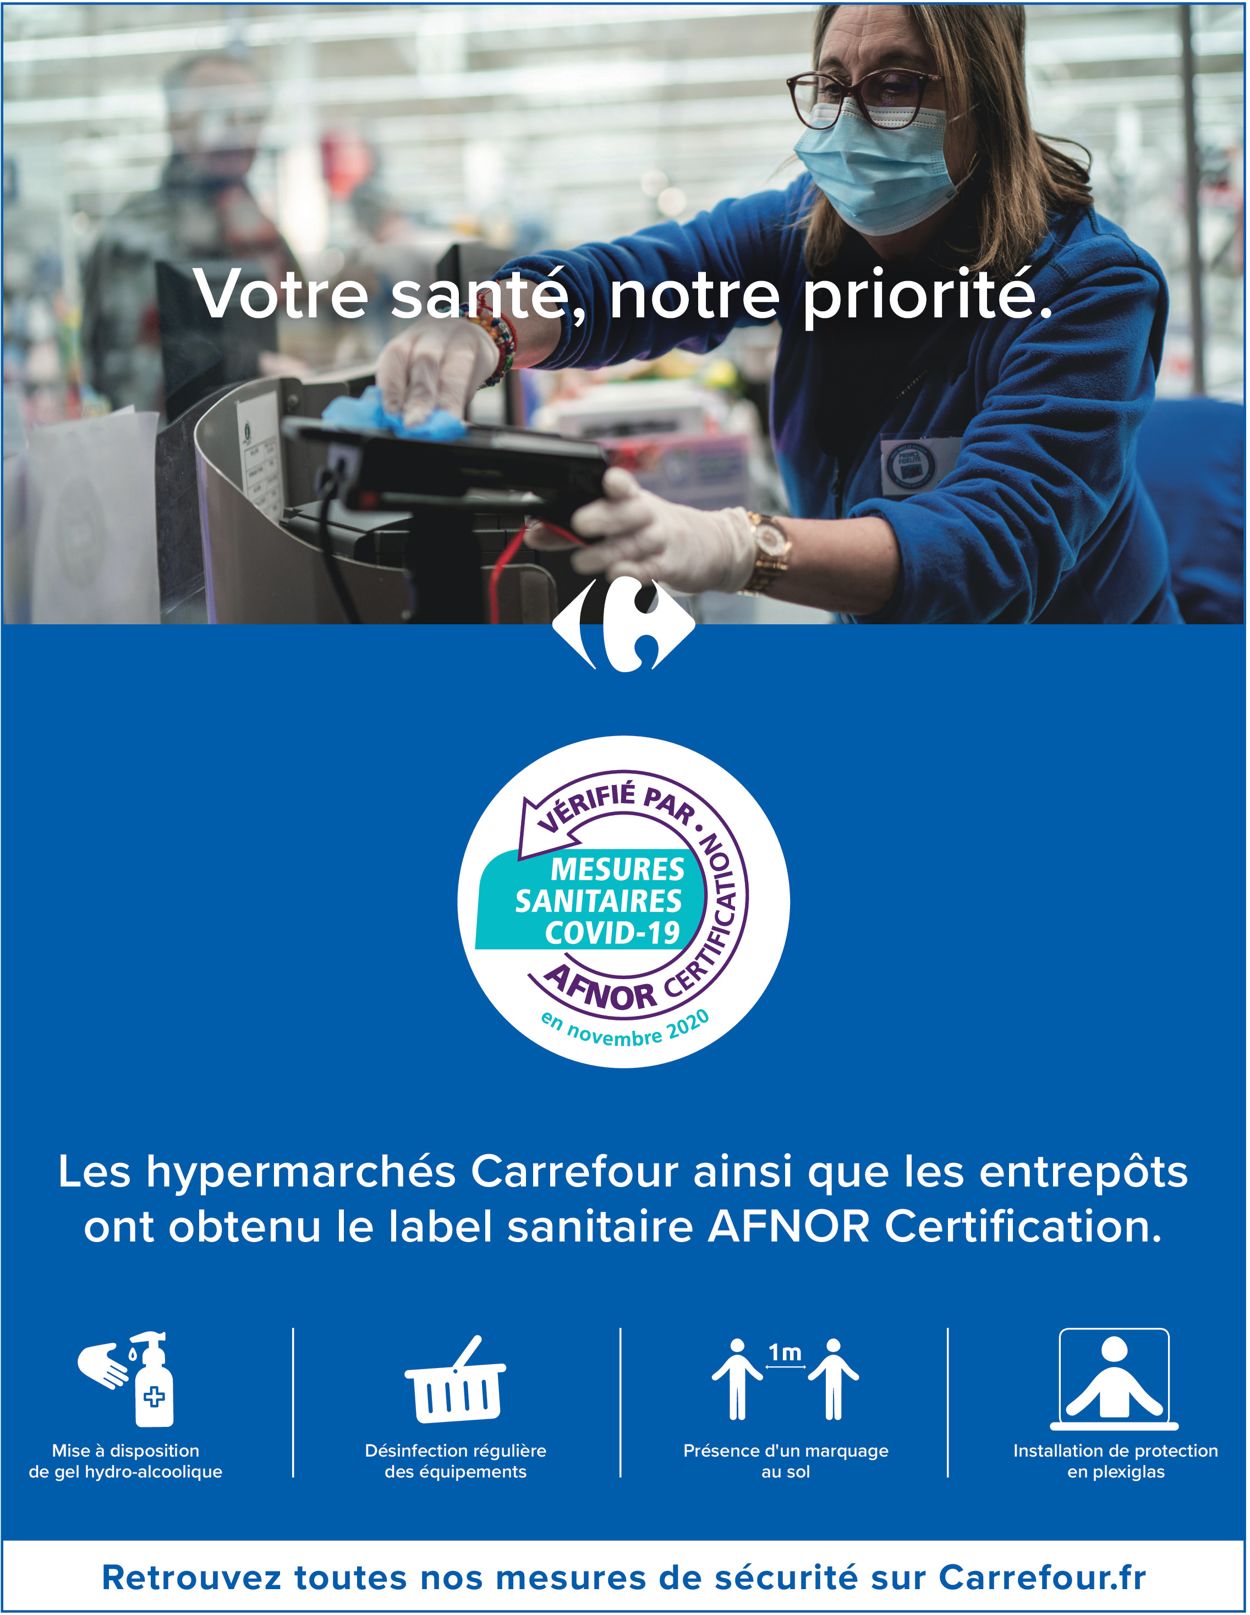 Carrefour Catalogue du 20.04.2021